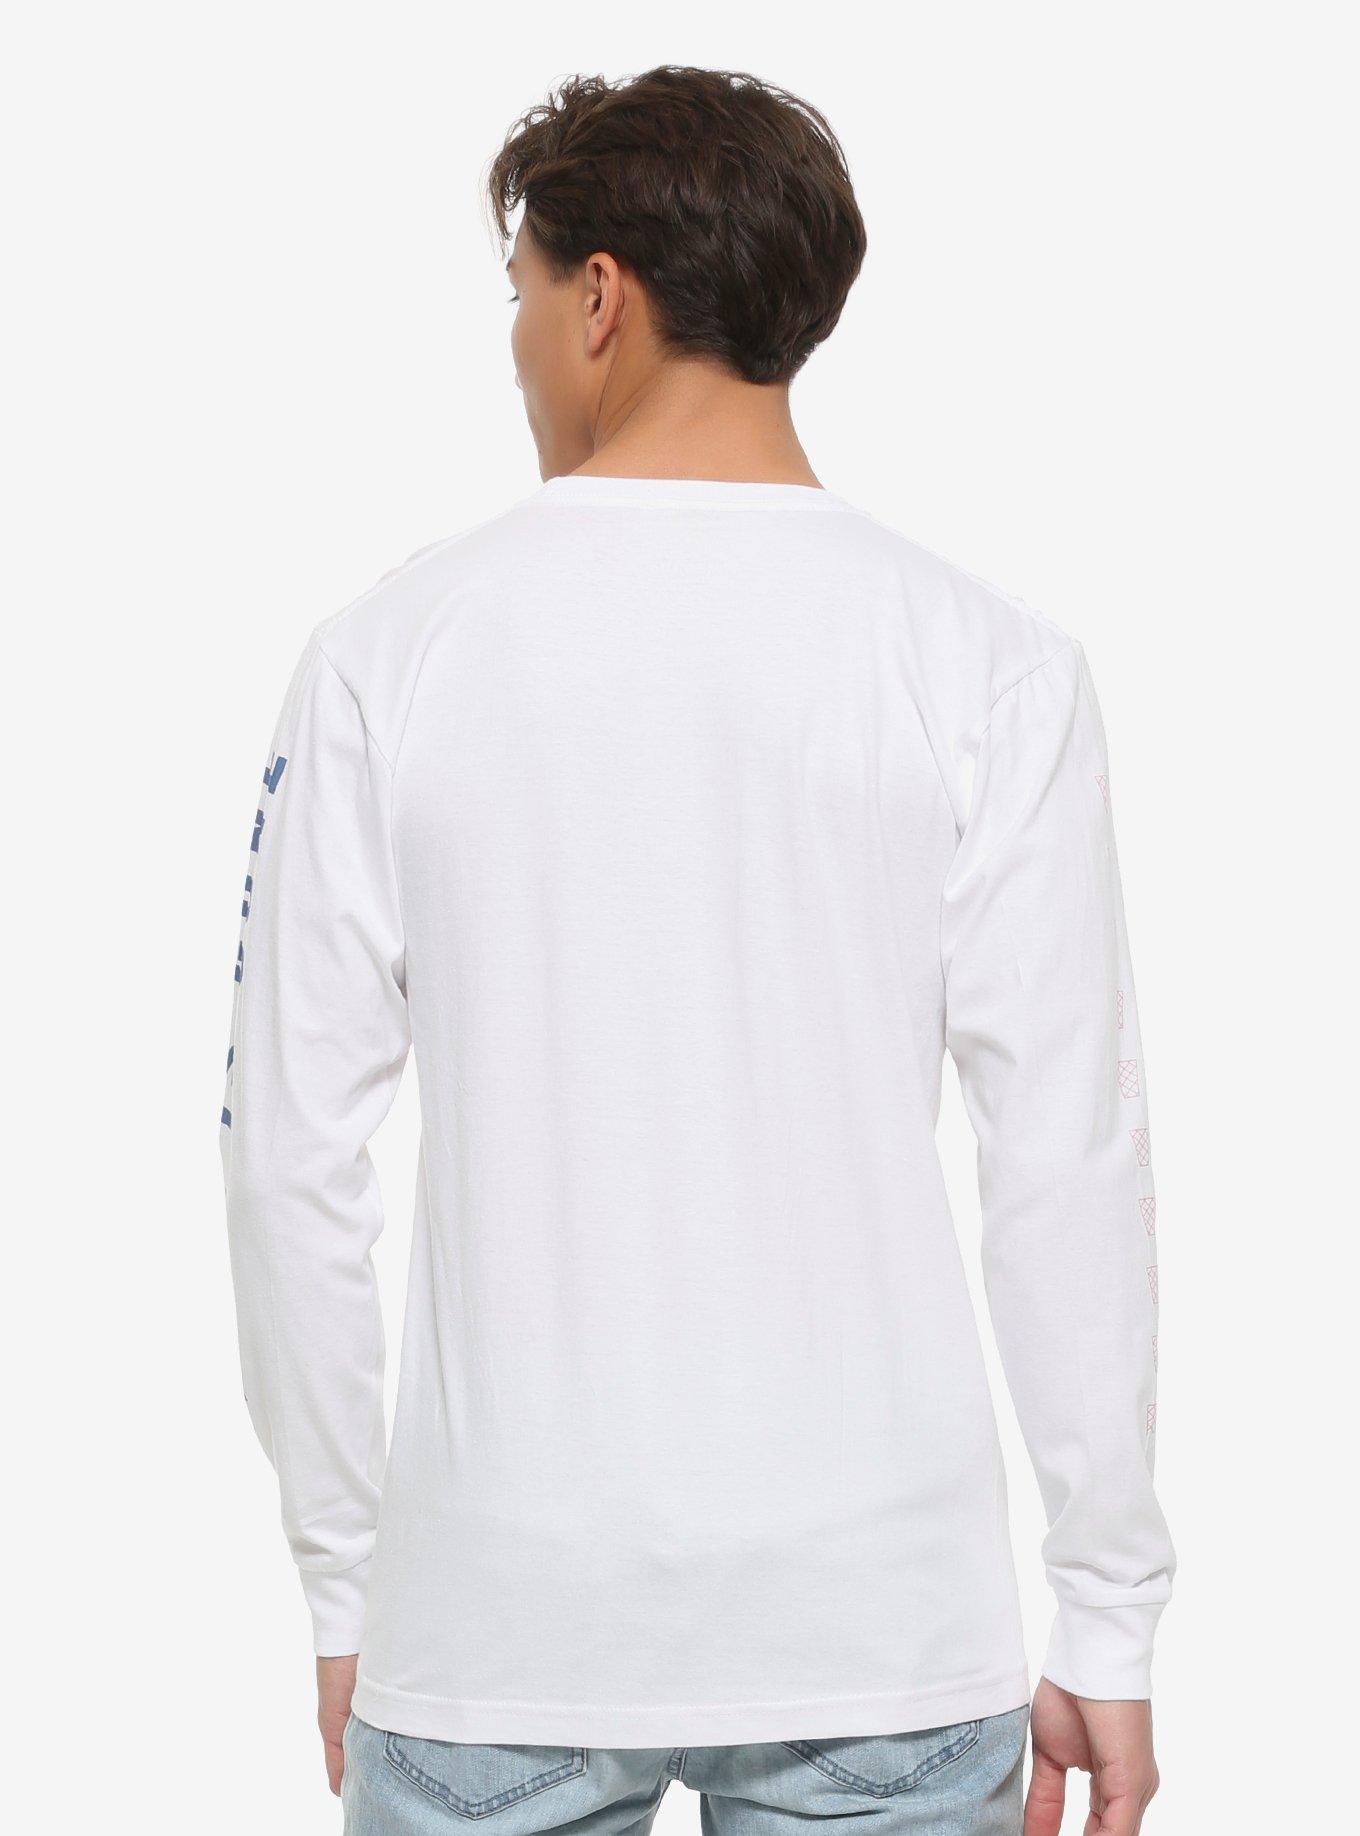 Vapor95 Hope Is Gone Long-Sleeve T-Shirt, WHITE, alternate